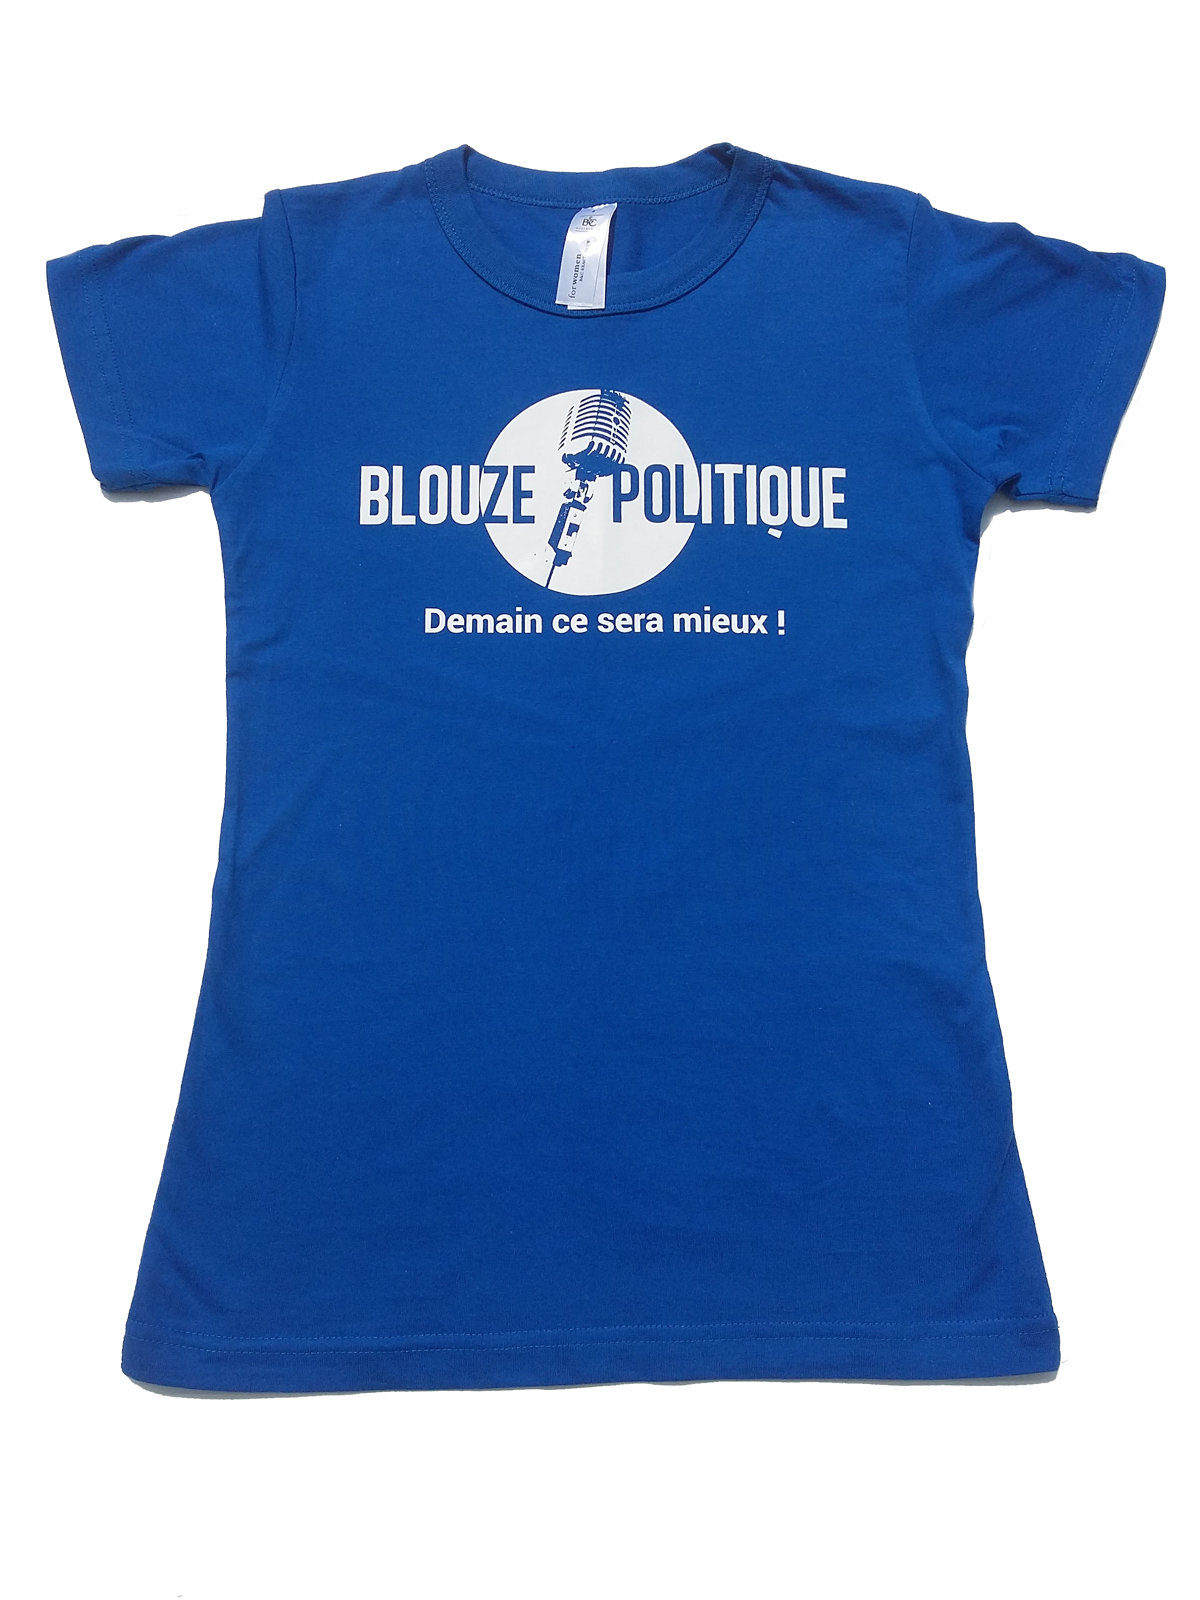 Tee-shirt Blouze Politique, modèle femme, taille S,M, L